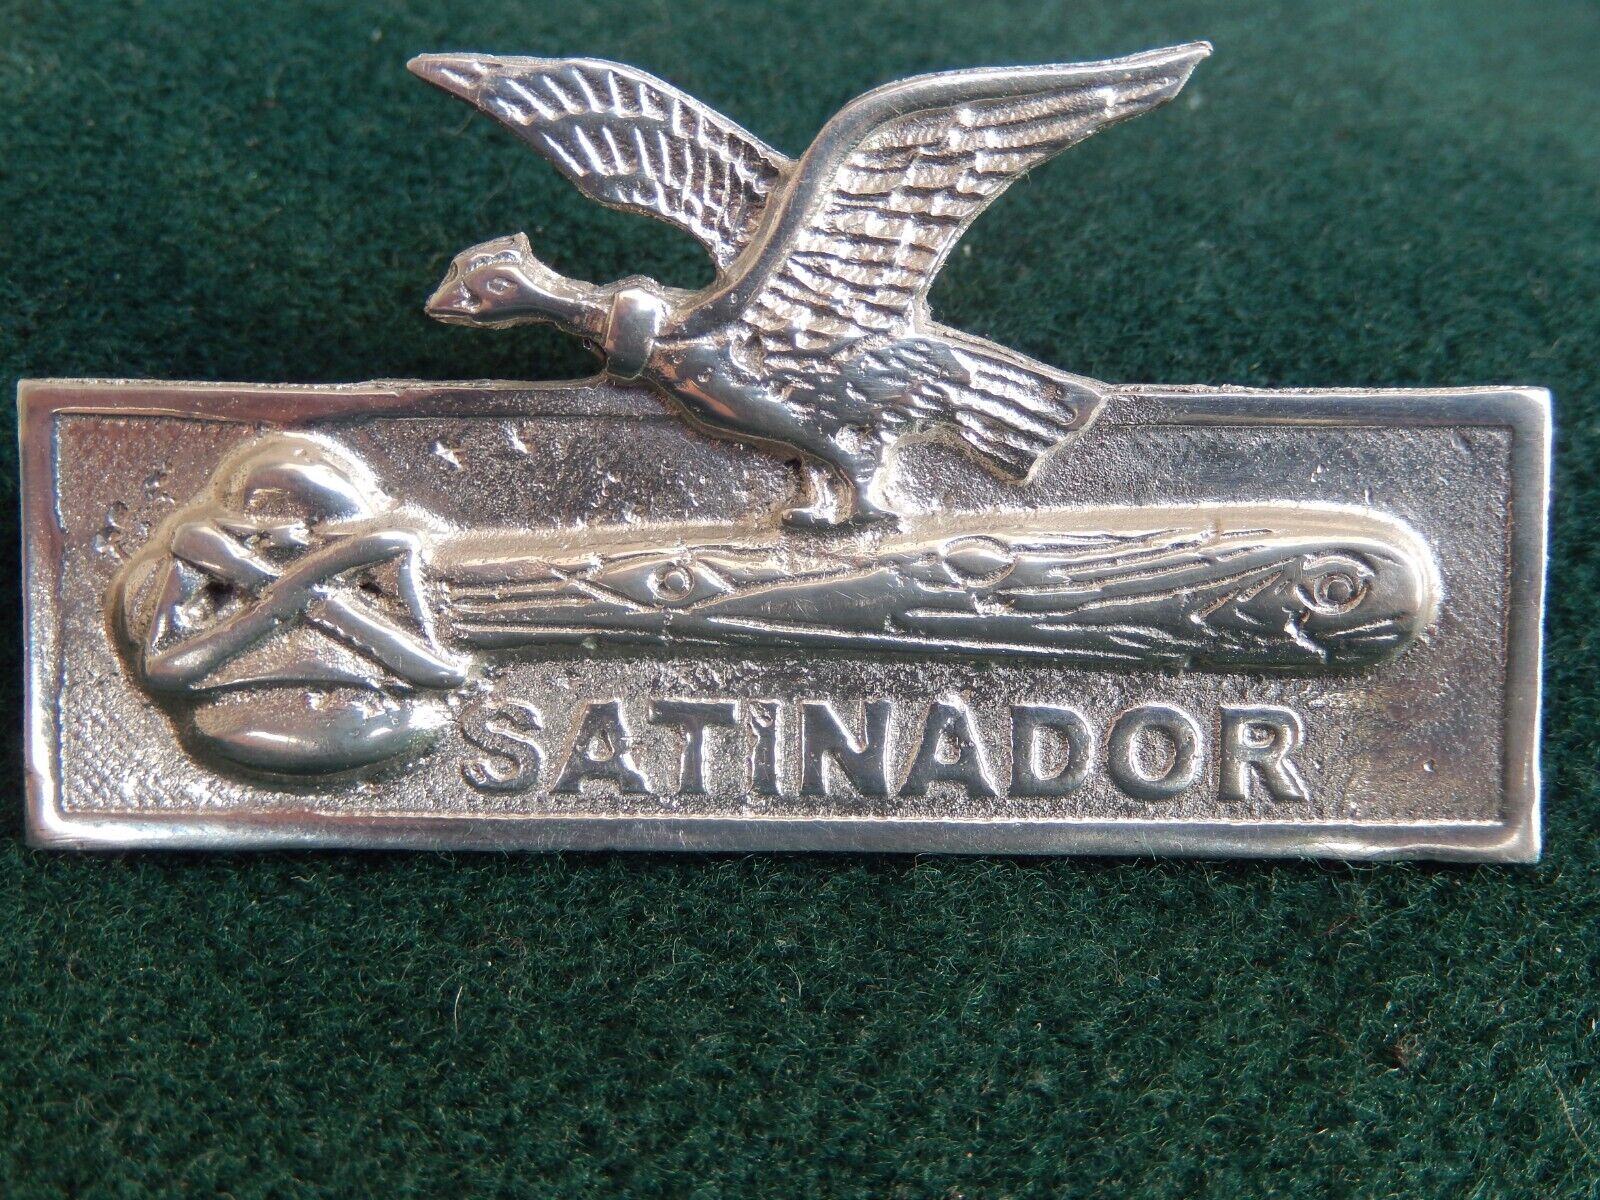 BOLIVIA - SPECIAL FORCES Operations in Jungle SATINADOR - CONDOR Bolivian badge